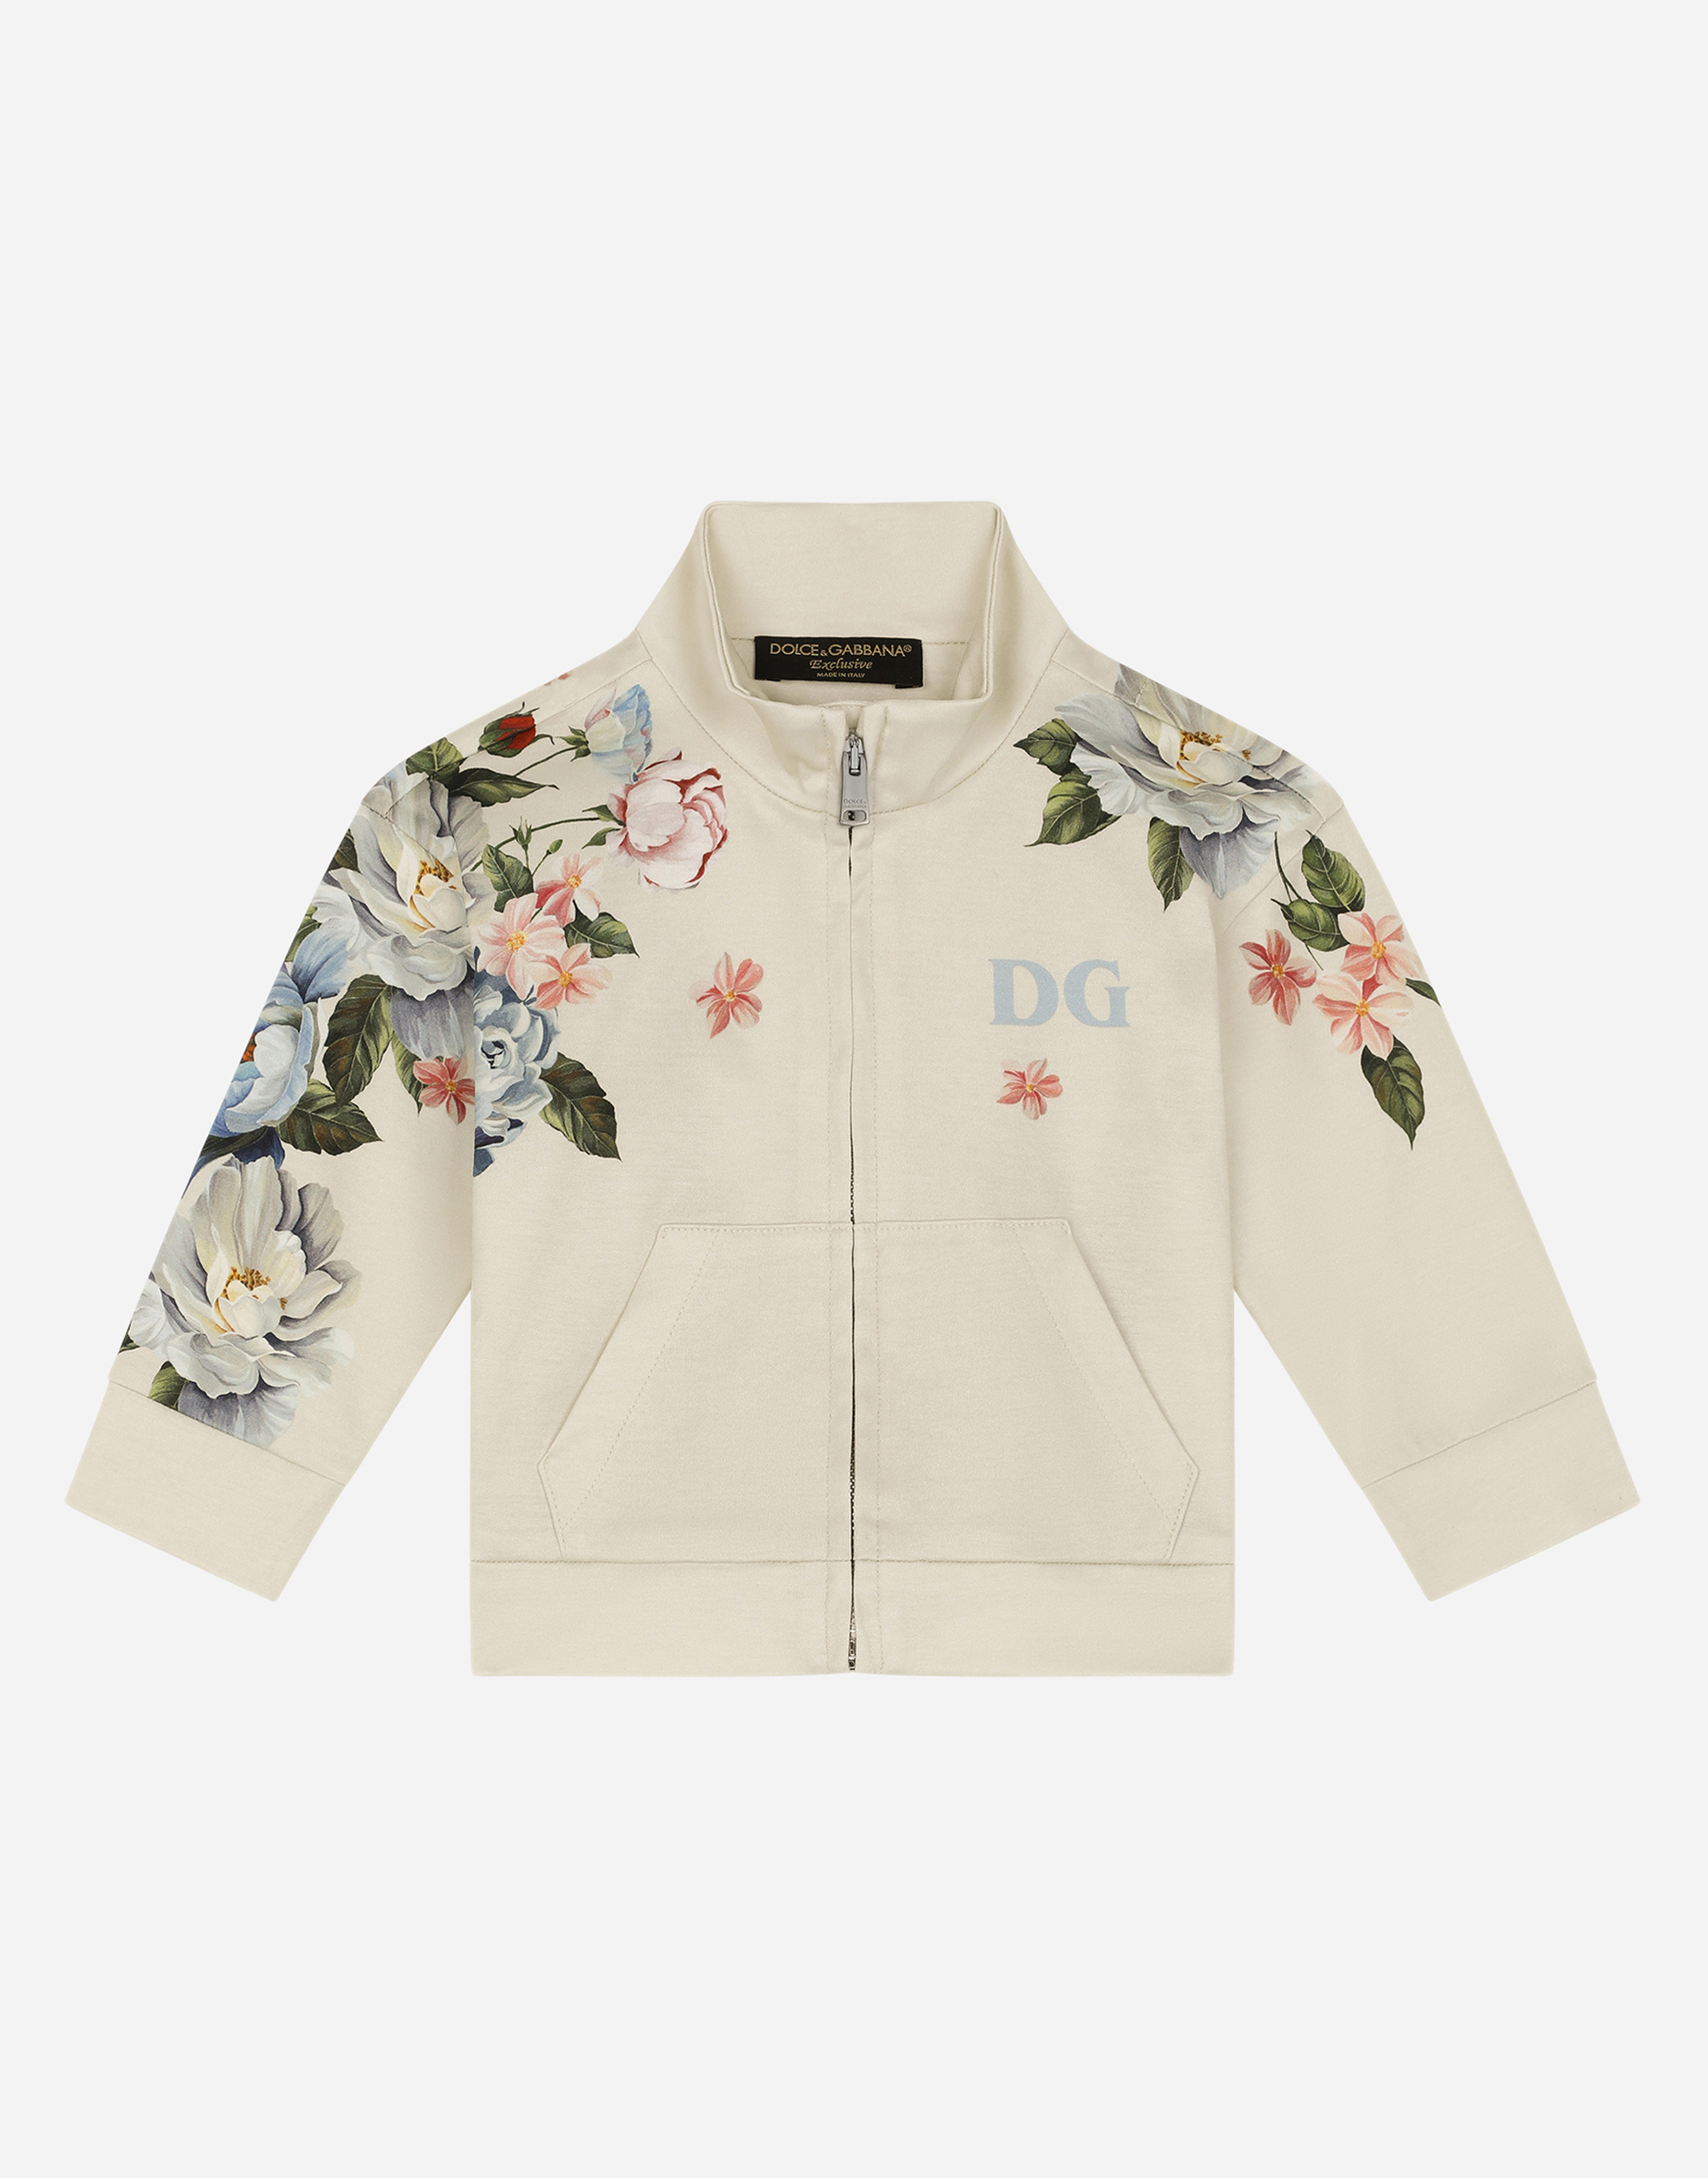 Dolce & Gabbana Babies' Zip-up Jersey Sweatshirt With Magnolia Print